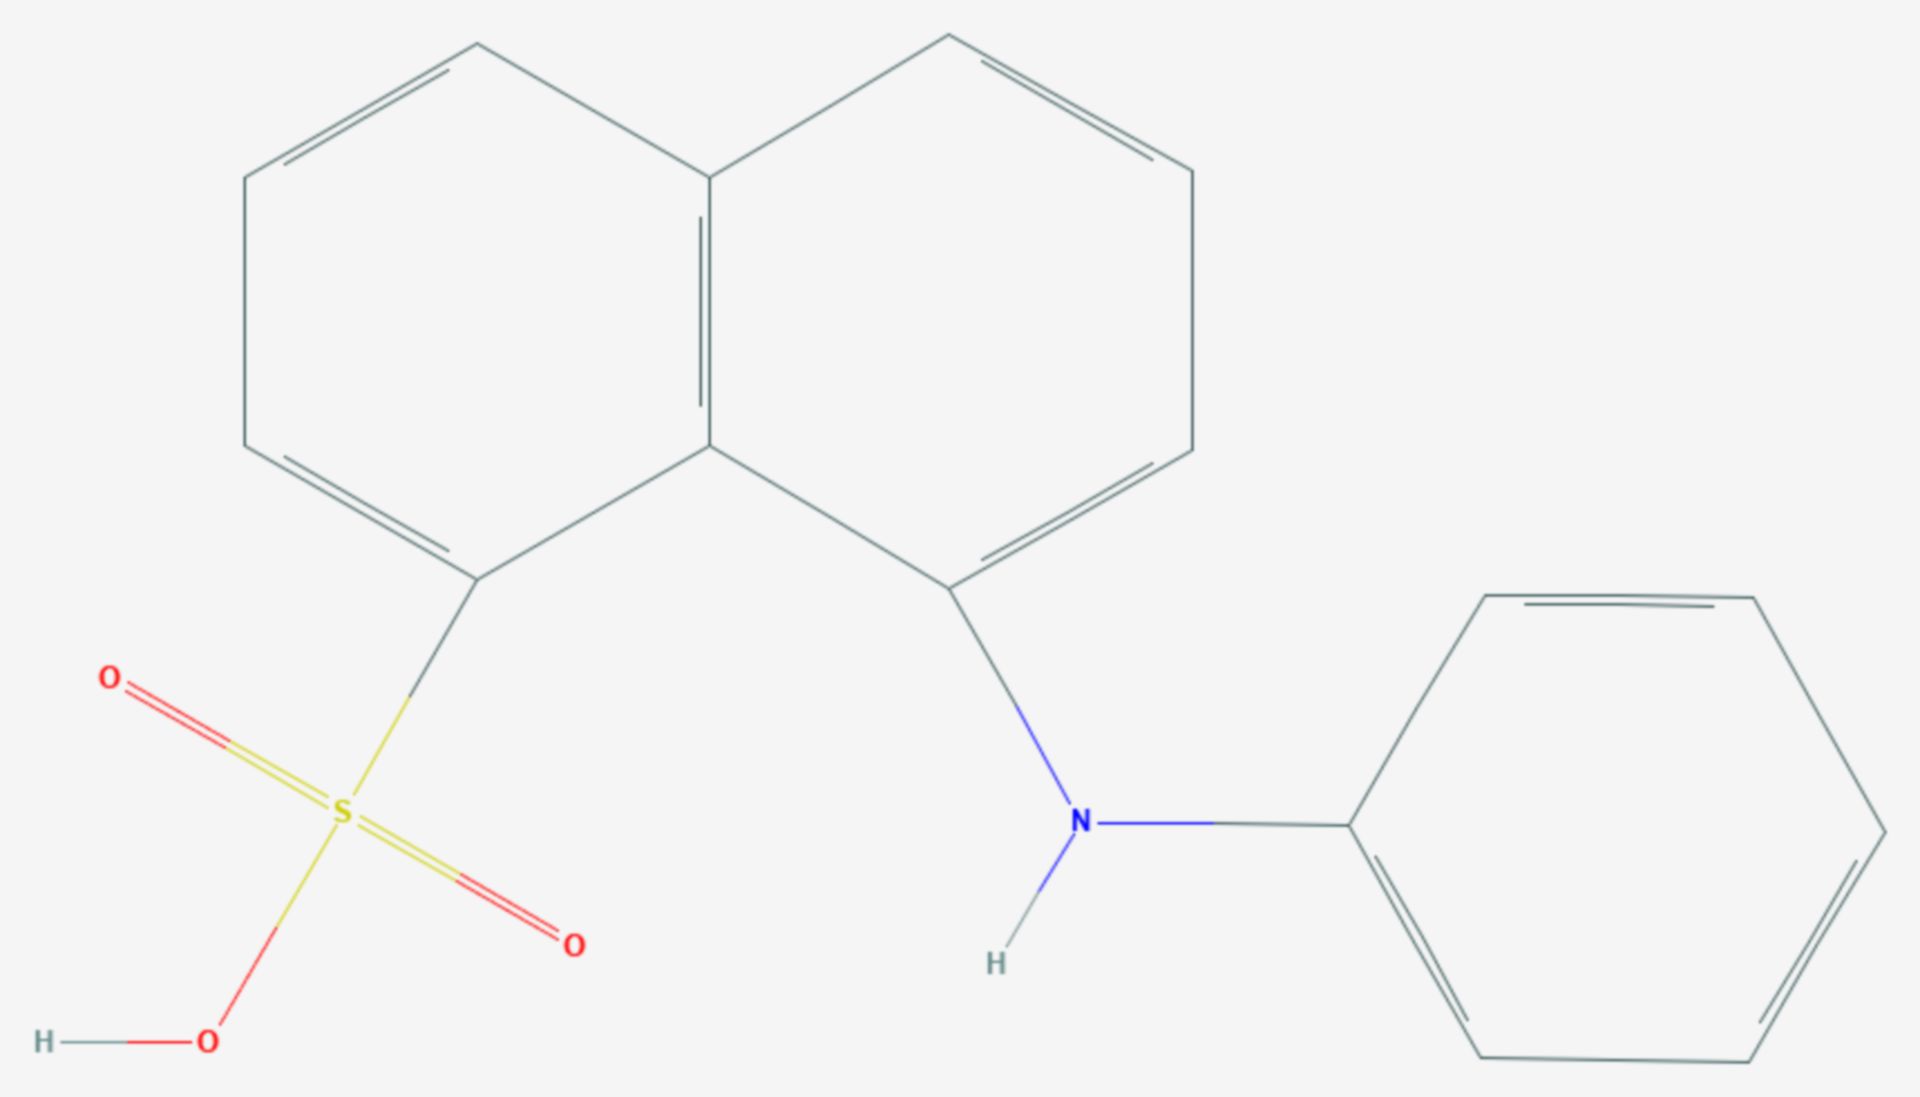 8-Anilinonaphthalin-1-sulfonsäure (Strukturformel)